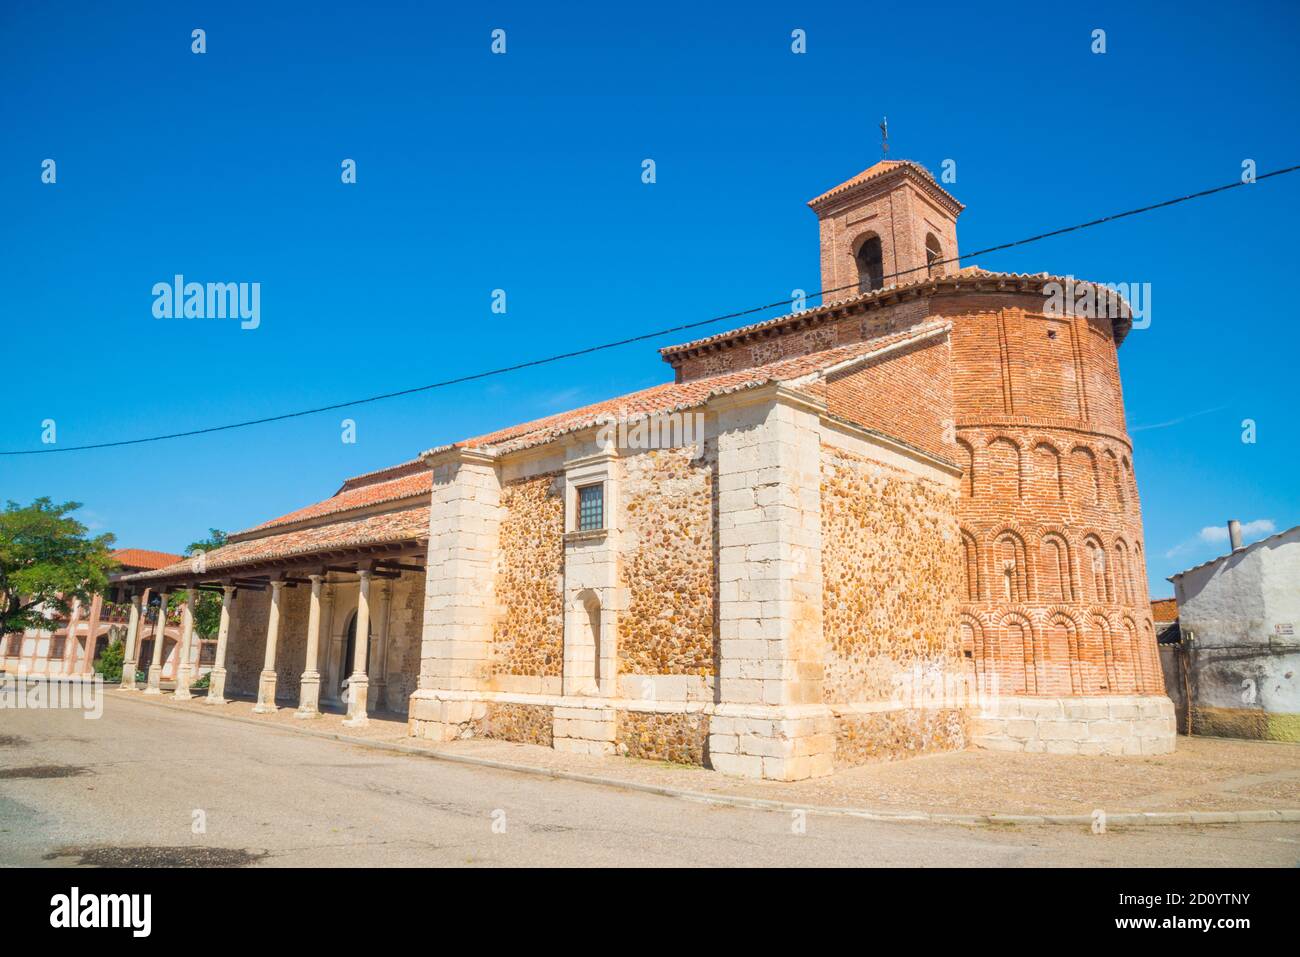 Facade of Nuestra Señora de la Asuncion church. Cubillo de Uceda, Guadalajara province, Castilla La Mancha, Spain. Stock Photo